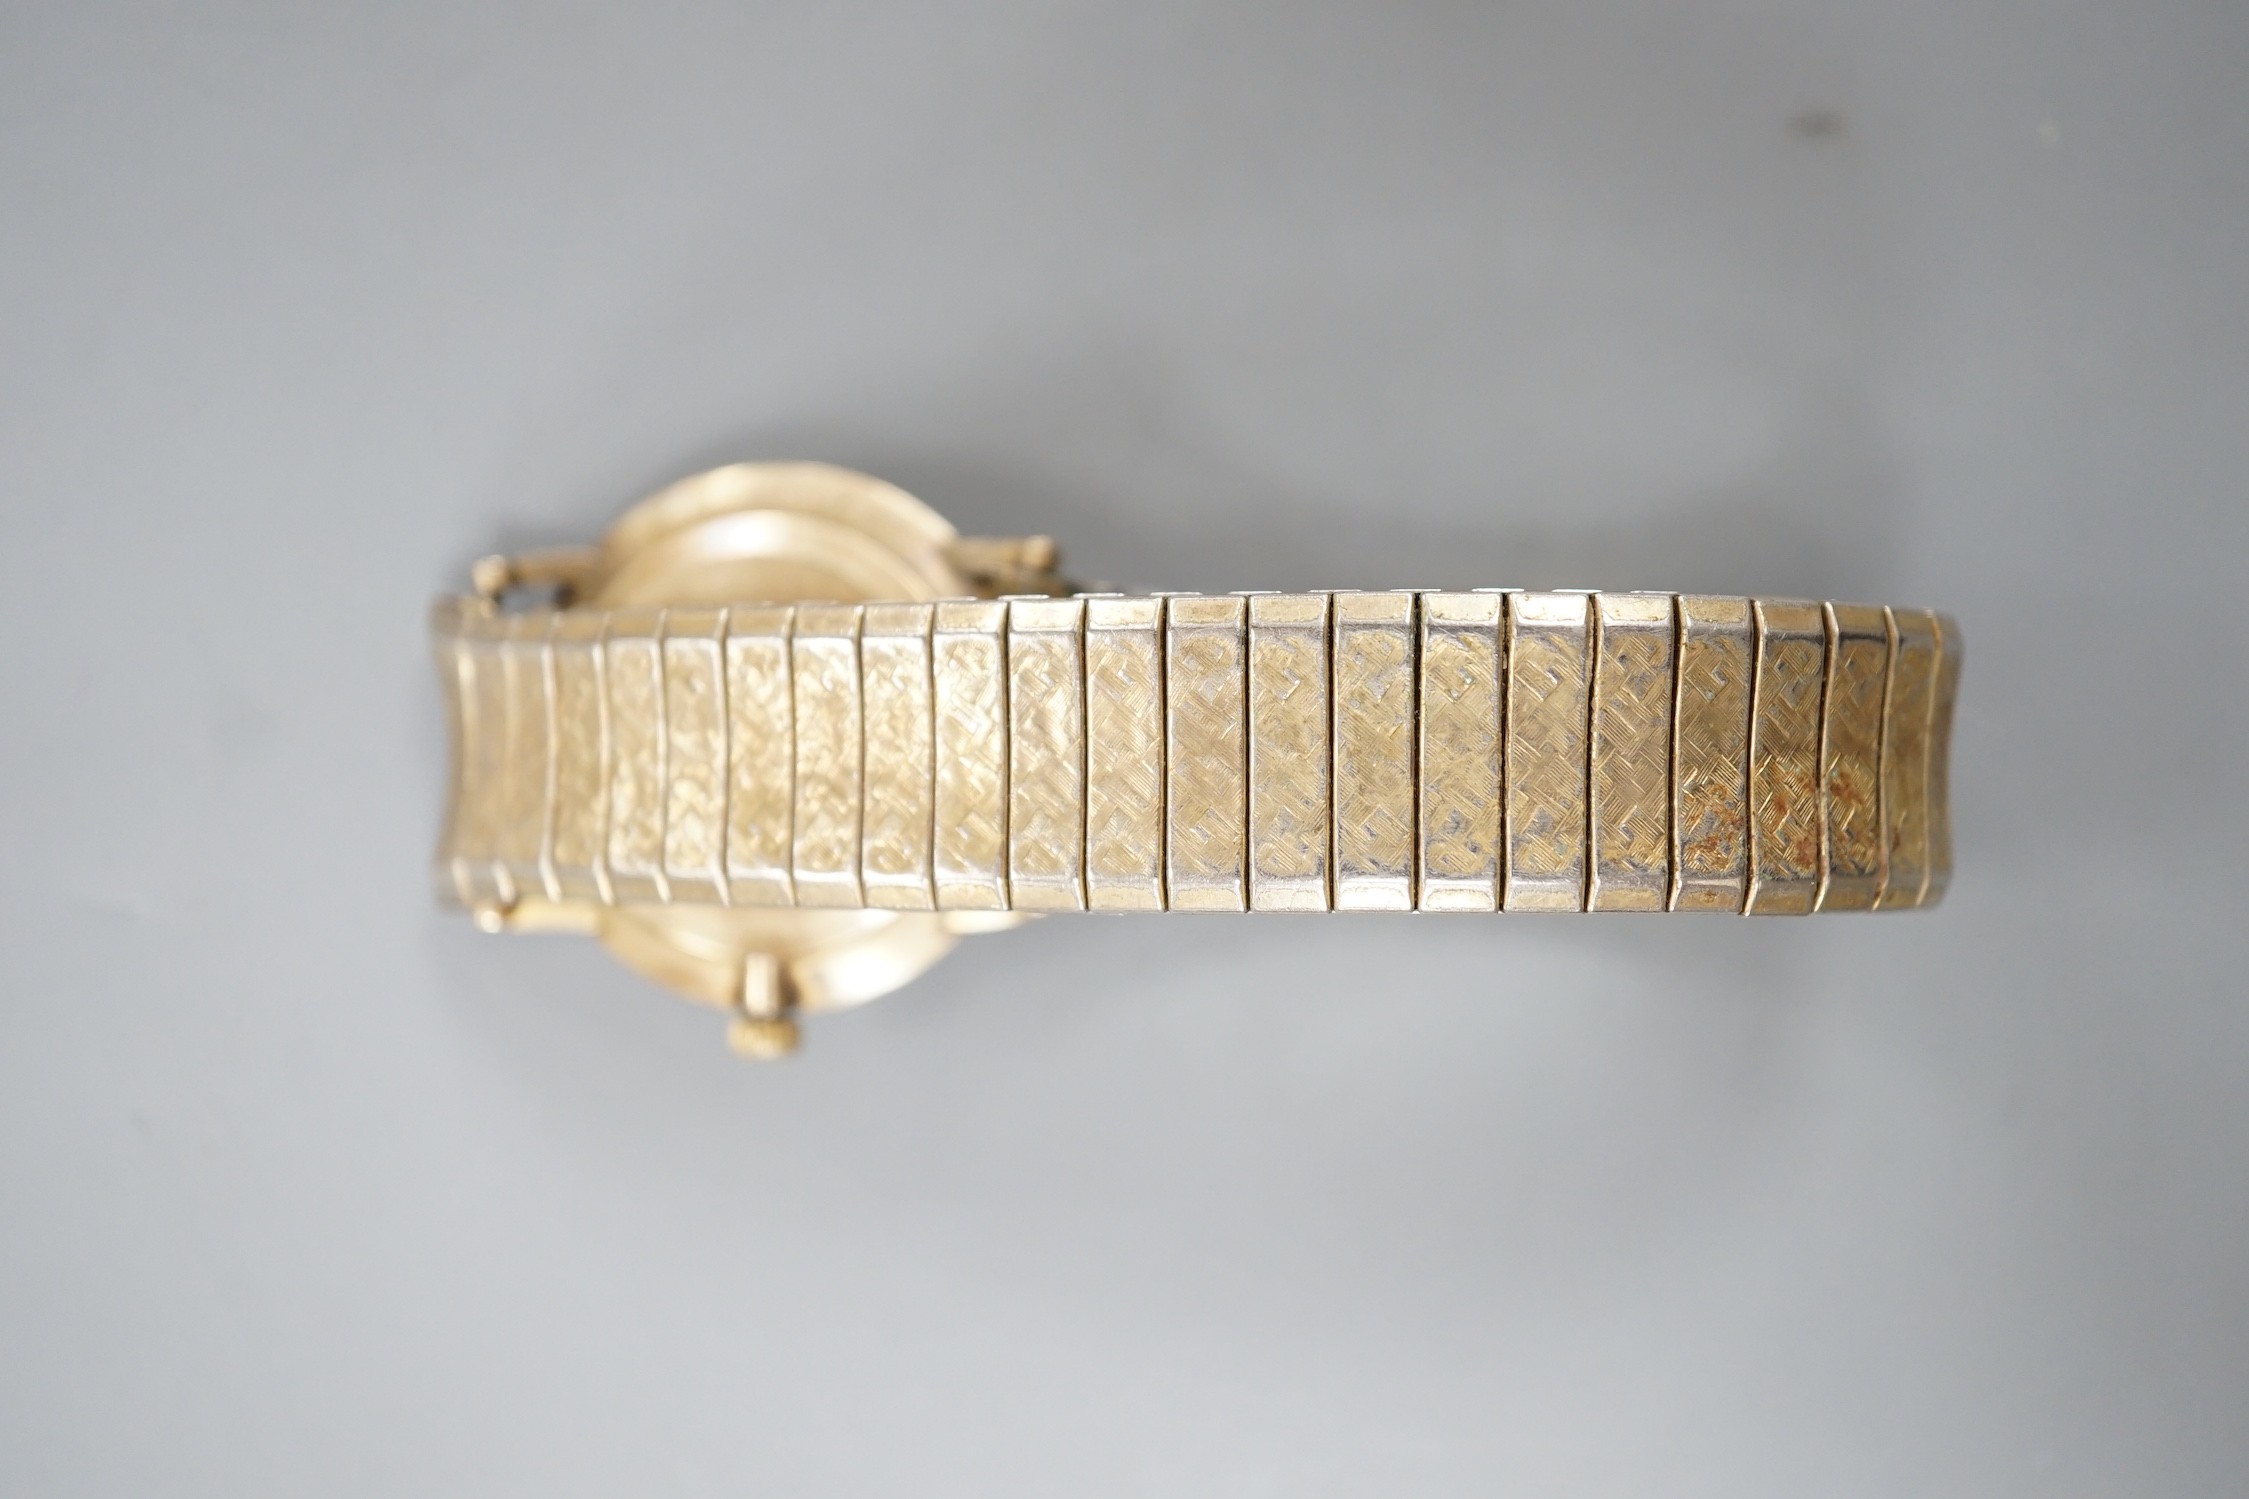 A gentleman's 9ct gold Longines Cosmic manual wind wrist watch, on associated flexible bracelet.